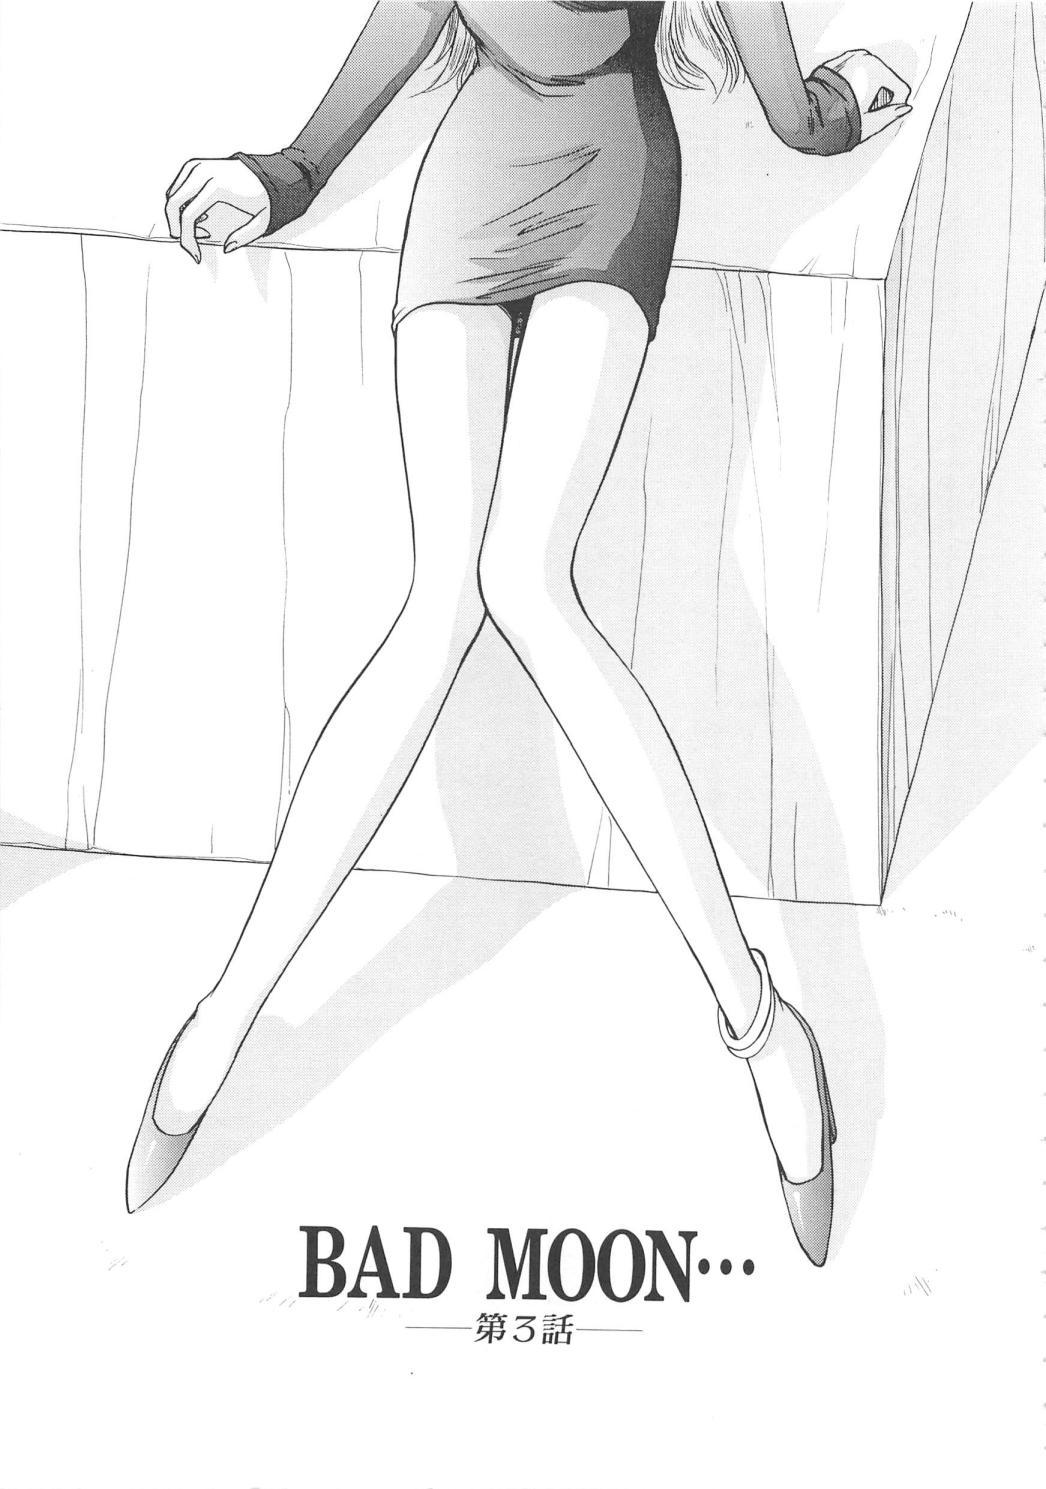 Bad Moon... 55